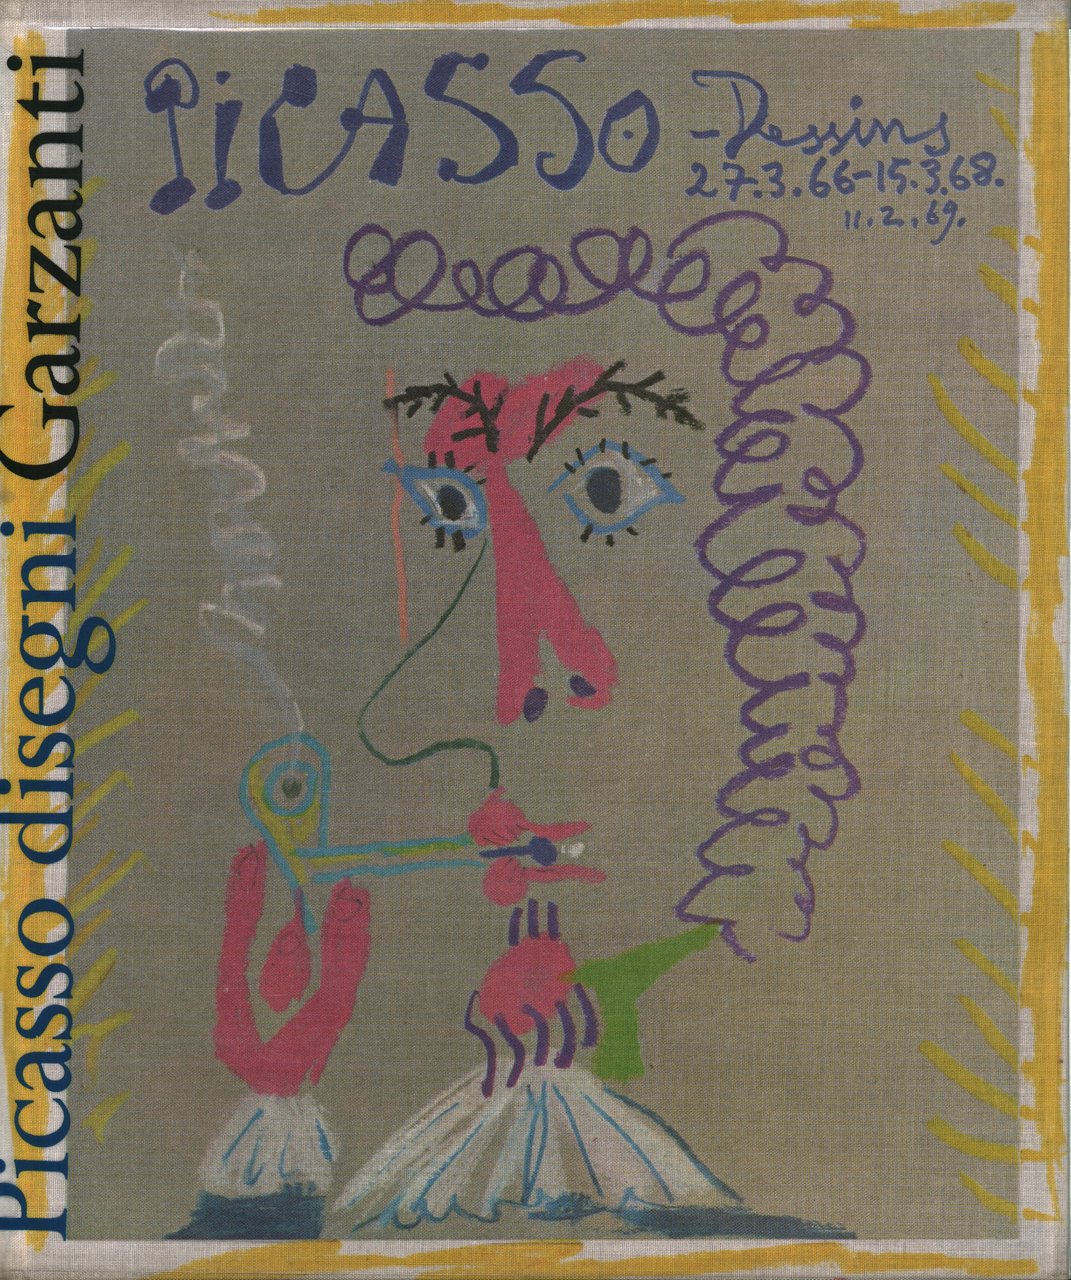 Picasso Disegni 27.3.66-15.3.68